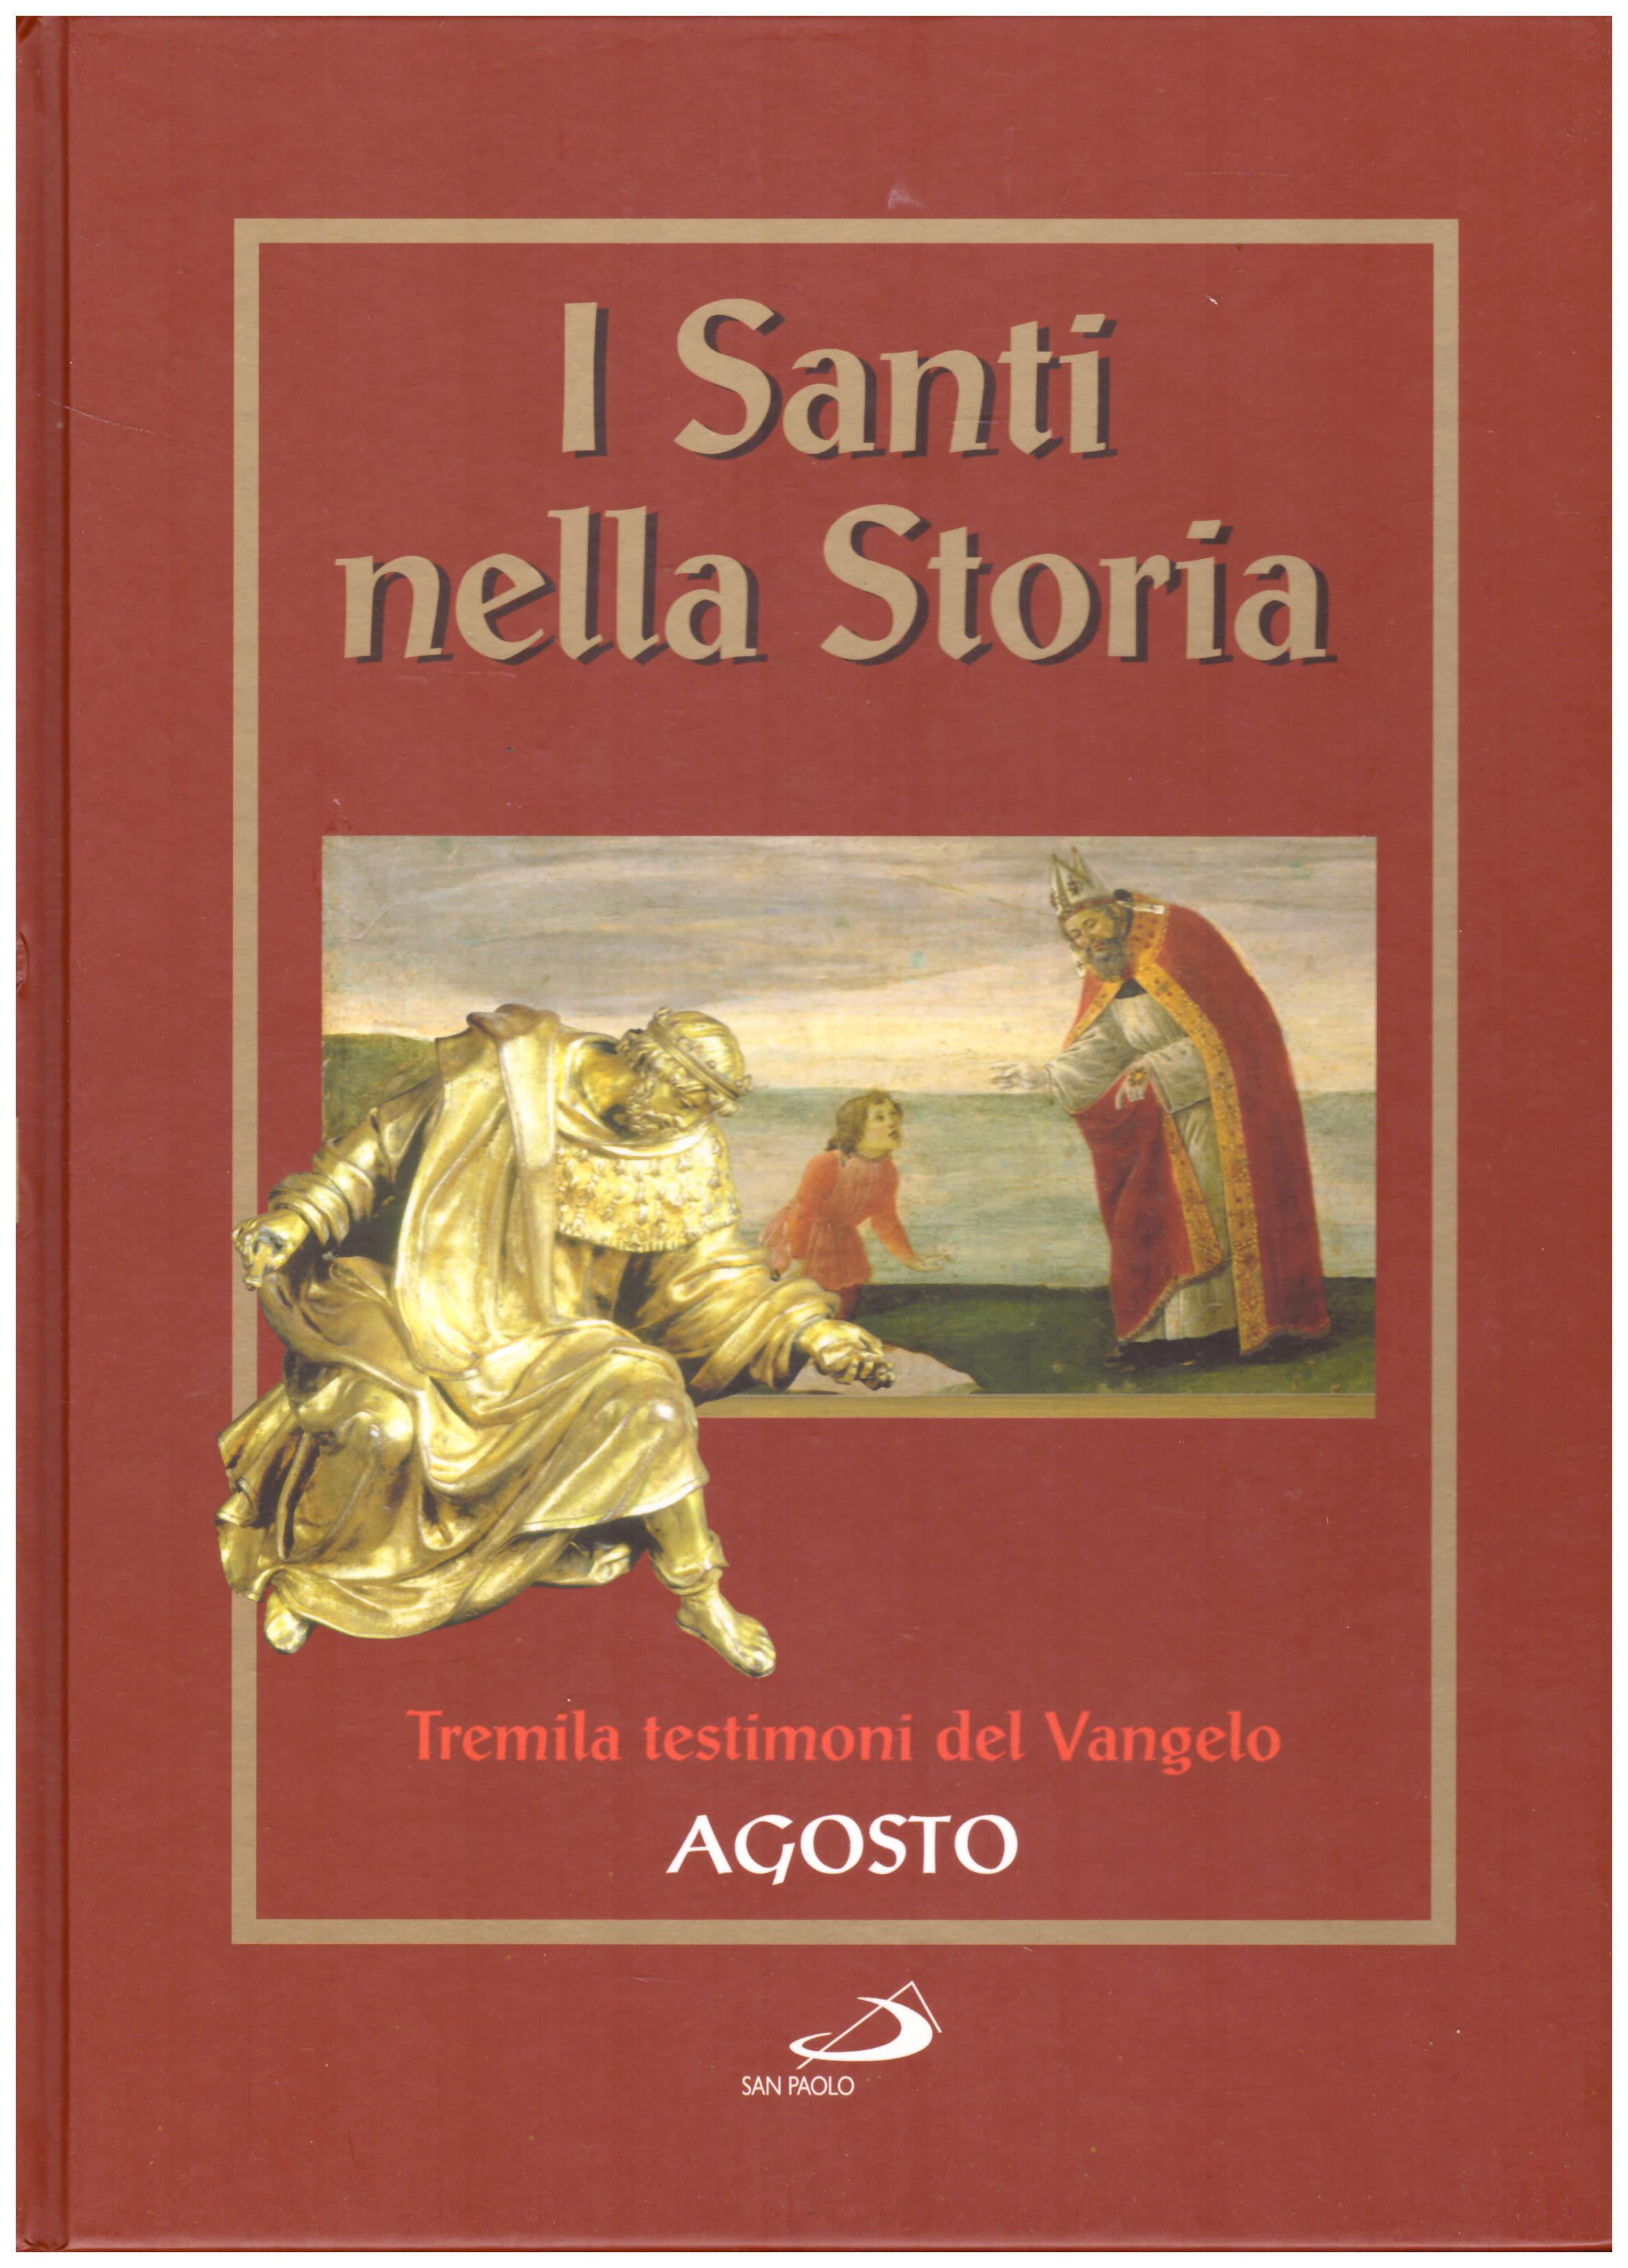 Titolo: I santi nella storia, Agosto Autore: AA.VV.  Editore: San Paolo, 2006